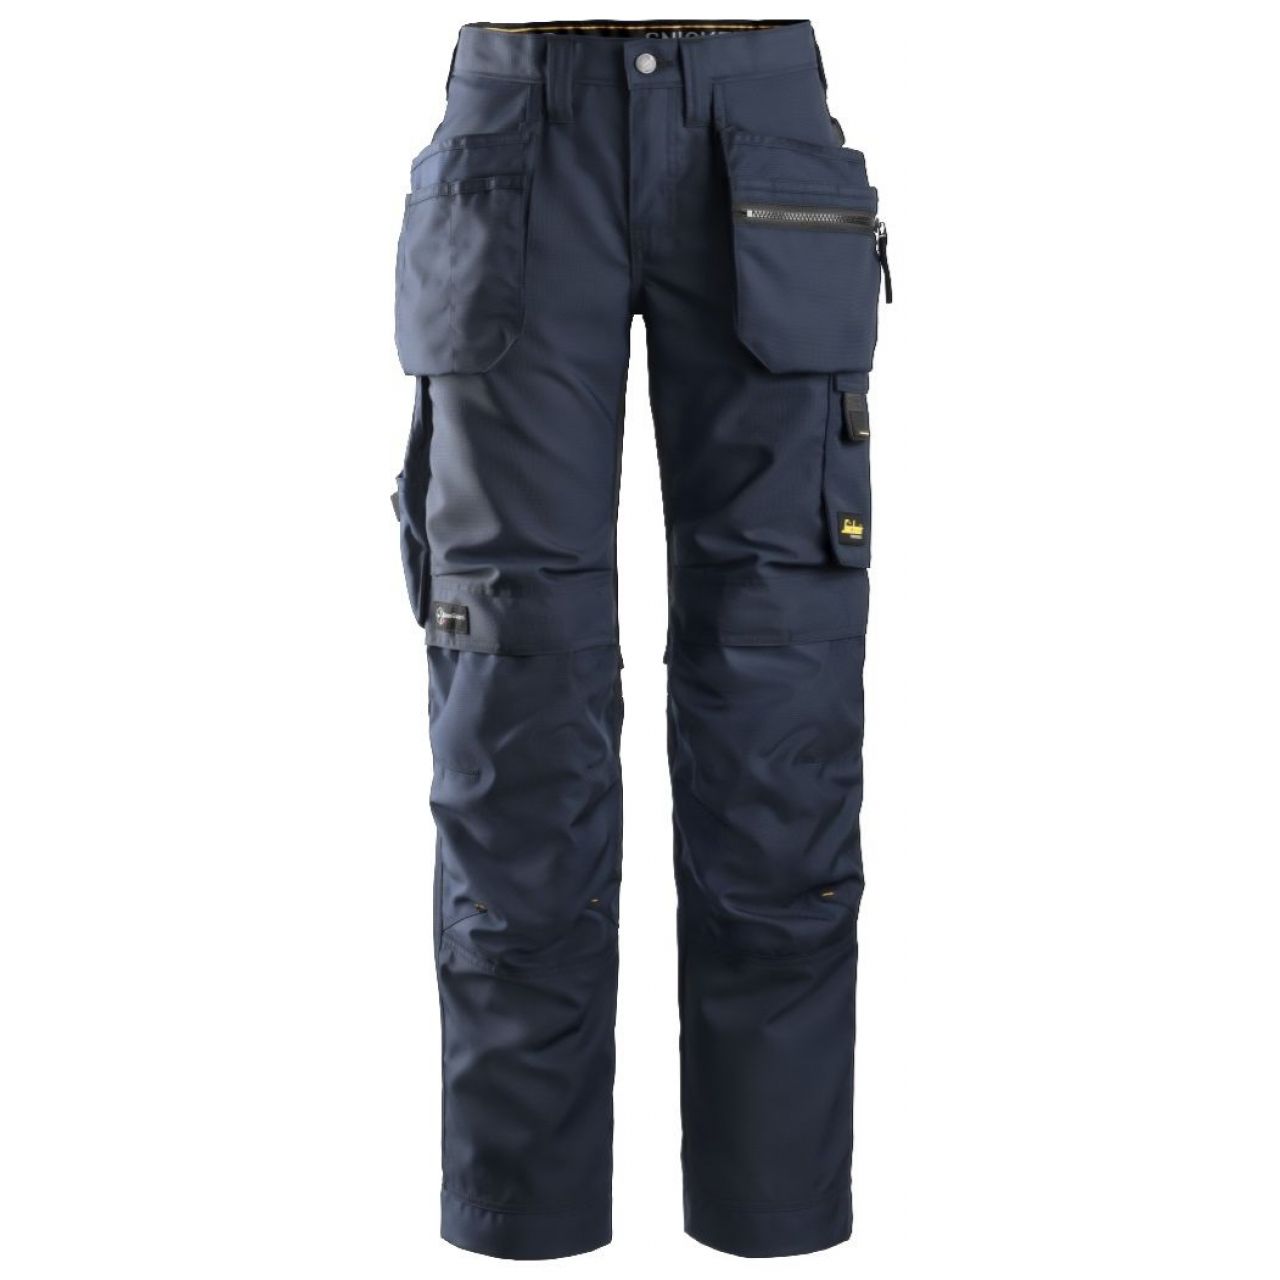 Pantalon de mujer AllroundWork+ con bolsillos flotantes azul marino-negro talla 022